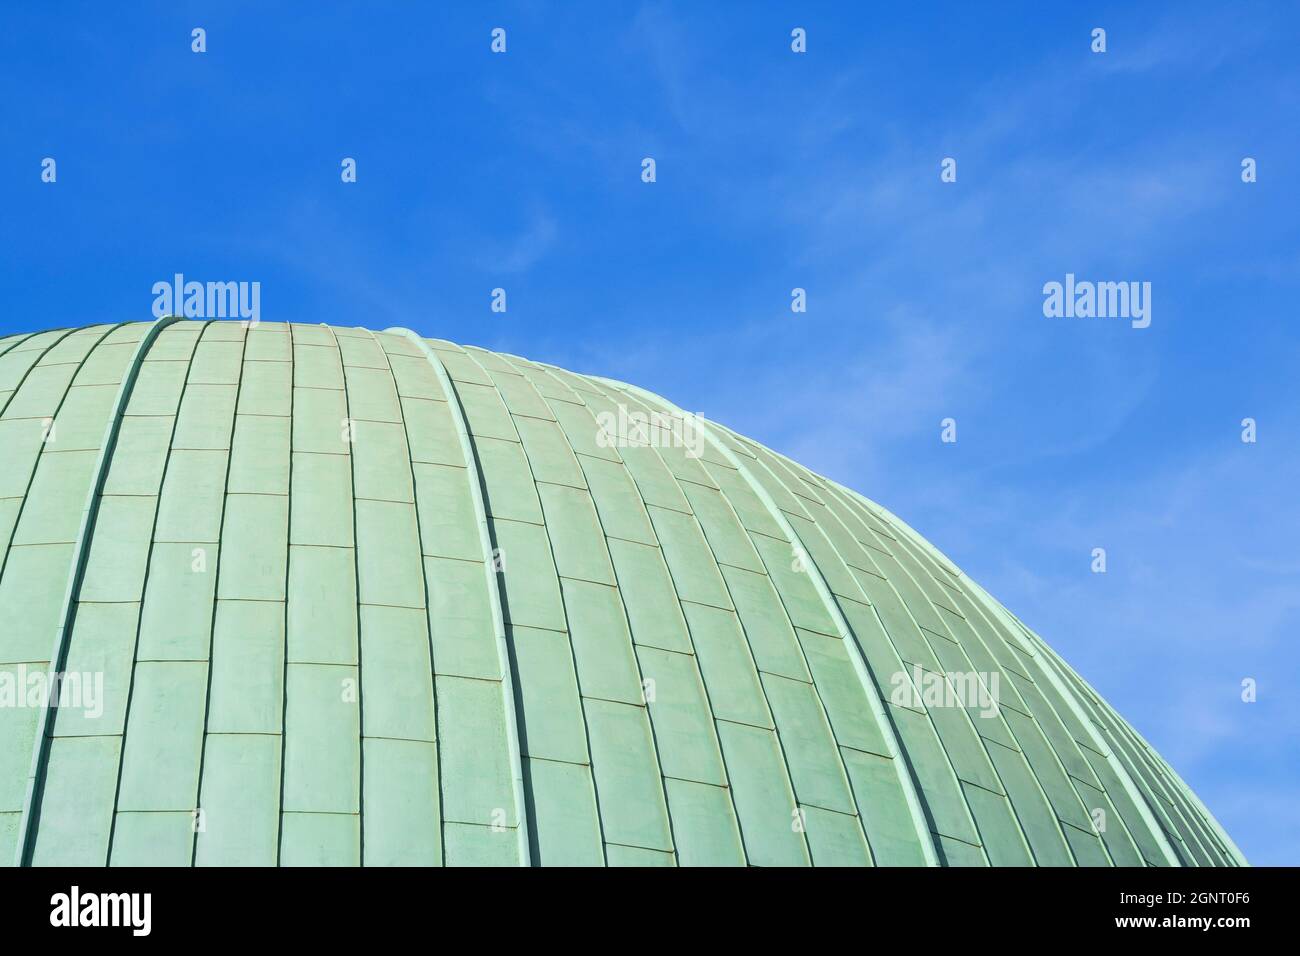 Immagine ravvicinata della cupola di Madame Tussauds, il famoso museo delle cere di Londra Foto Stock